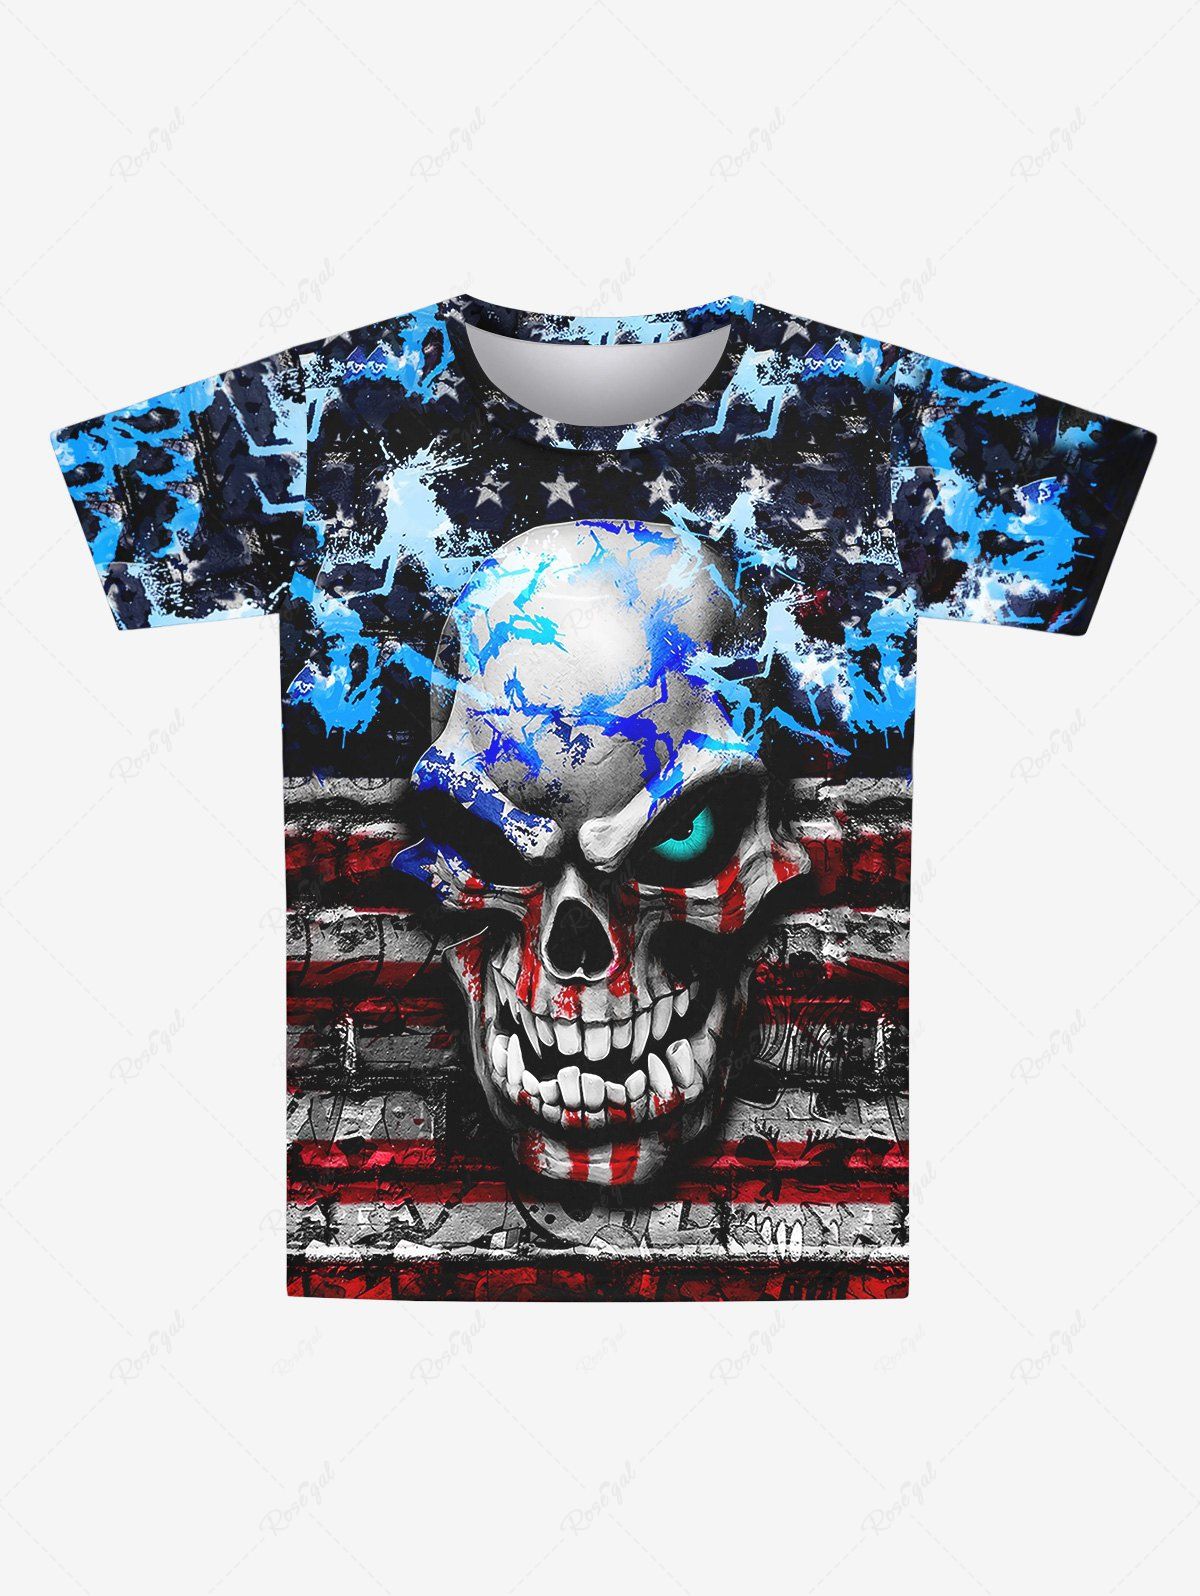 Online Gothic 3D Skull Striped Distressed Paint Pentagram Print Short Sleeves T-shirt For Men  